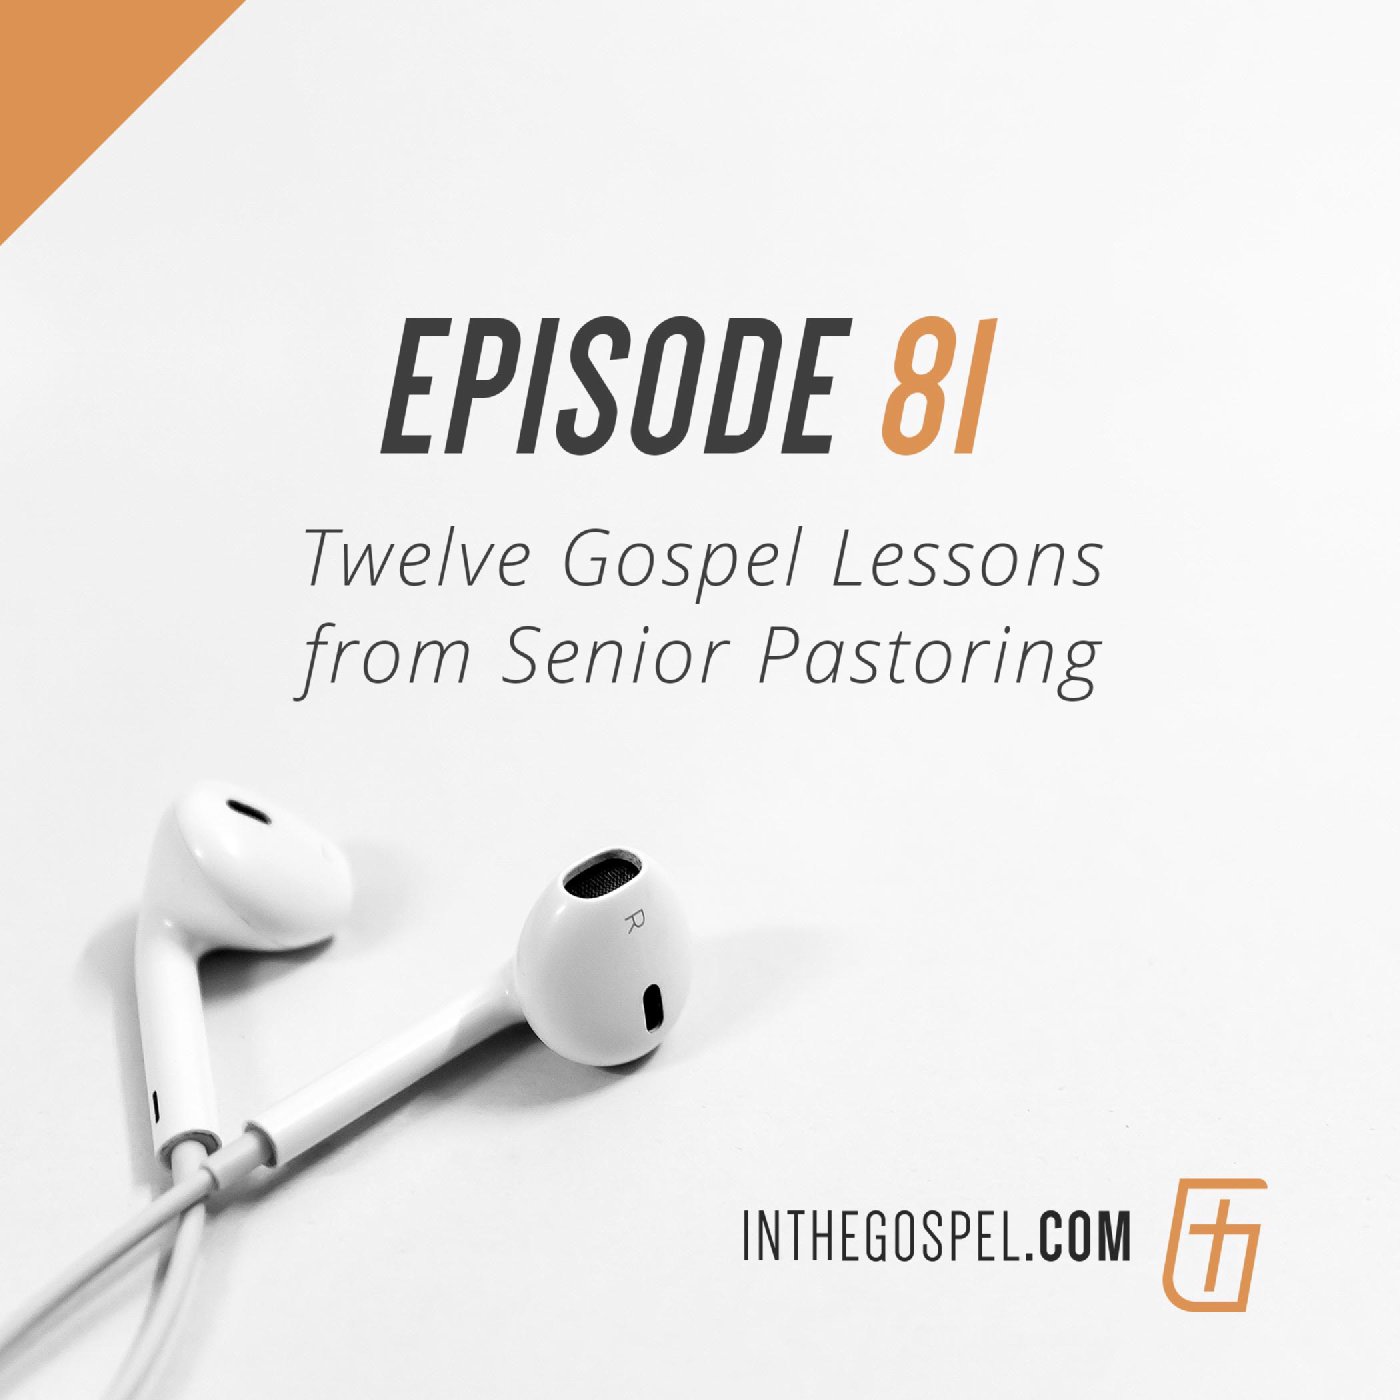 Episode 81: Twelve Gospel Lessons from Senior Pastoring